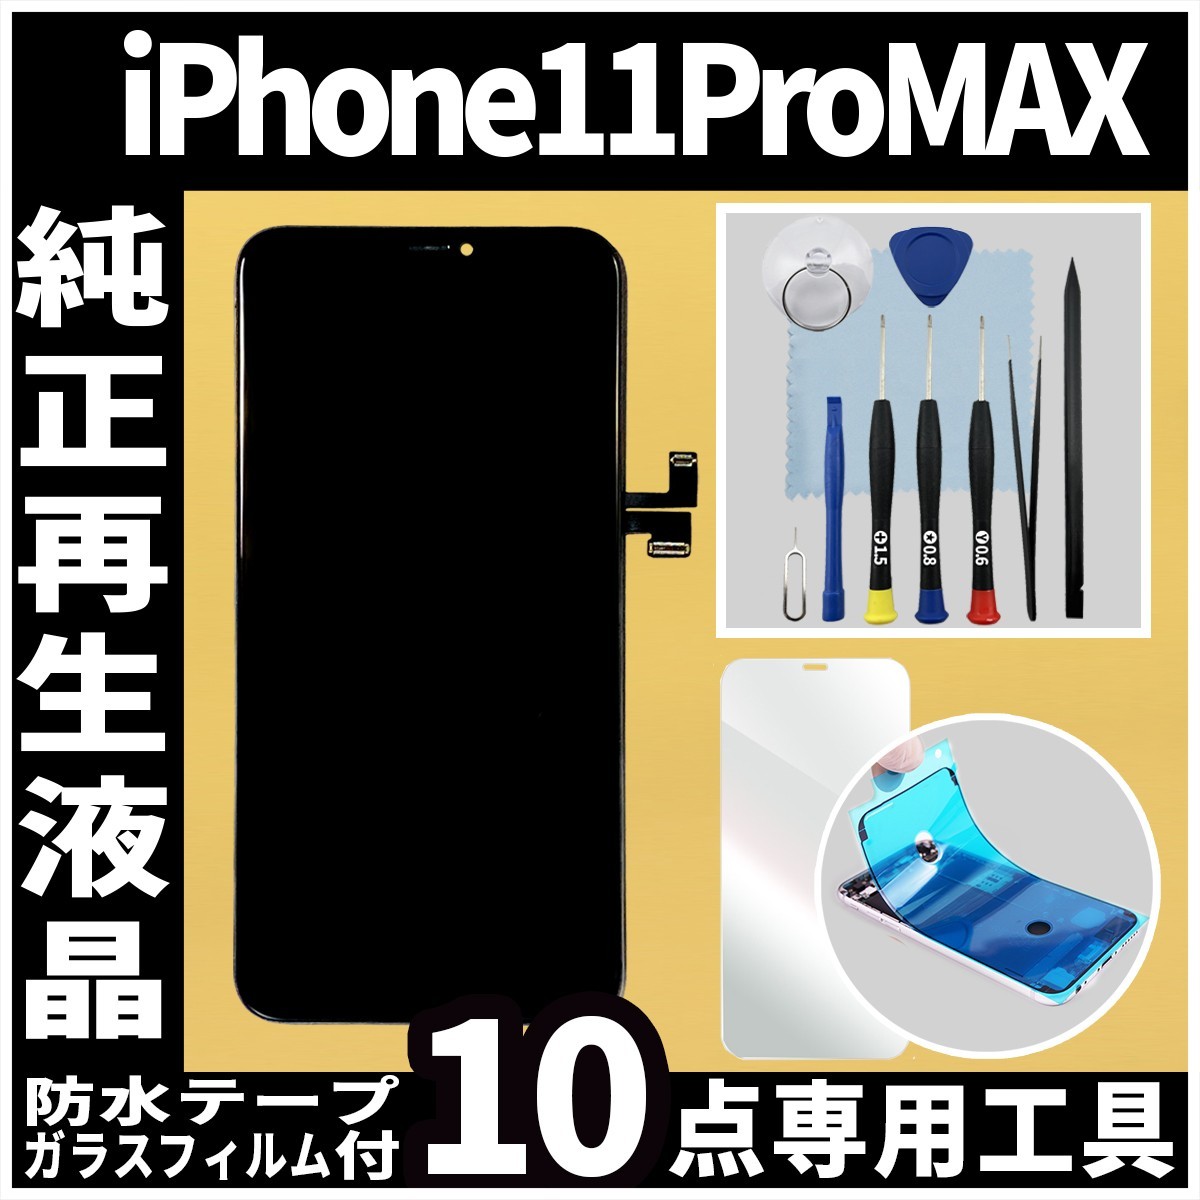 新品登場 iPhone11ProMax フロントパネル ディスプレイ ガラス割れ